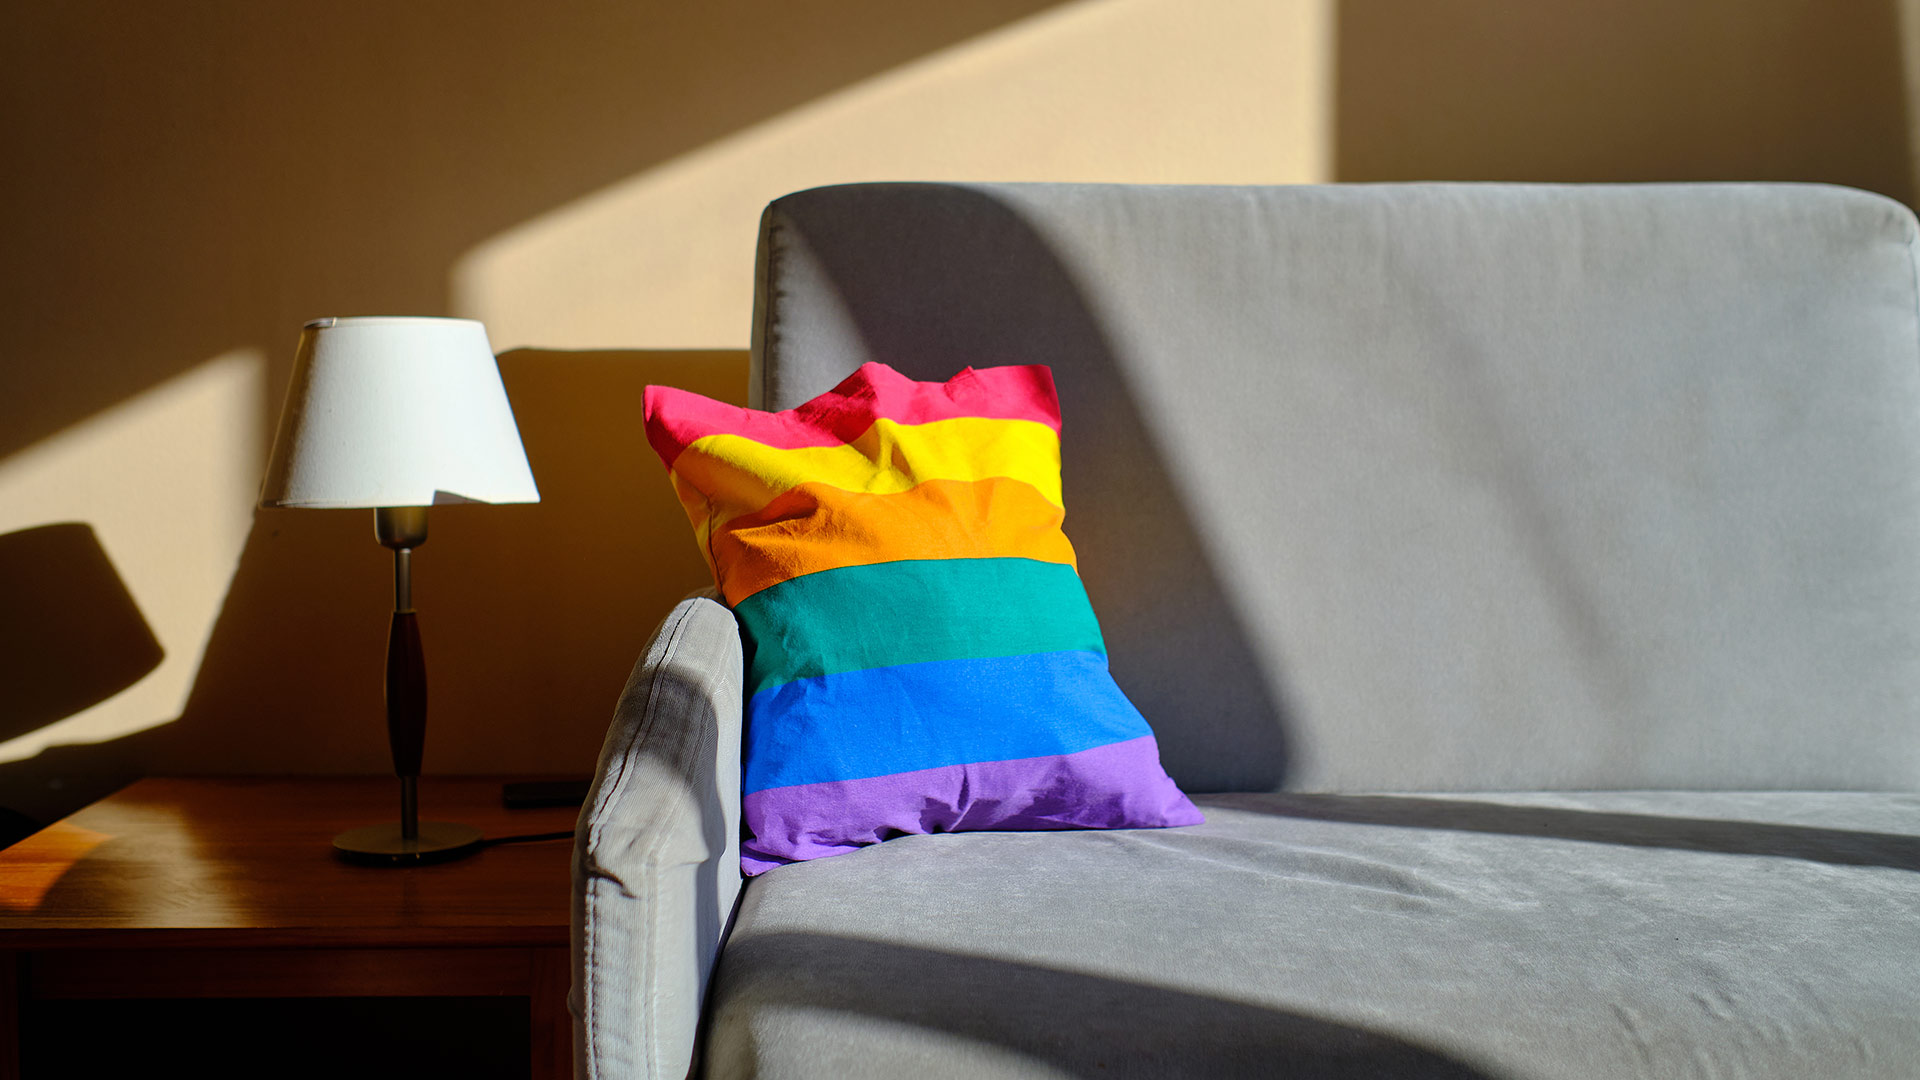 Gray sofa with rainbow throw pillow, sunlight from window illuminates the sofa and wall